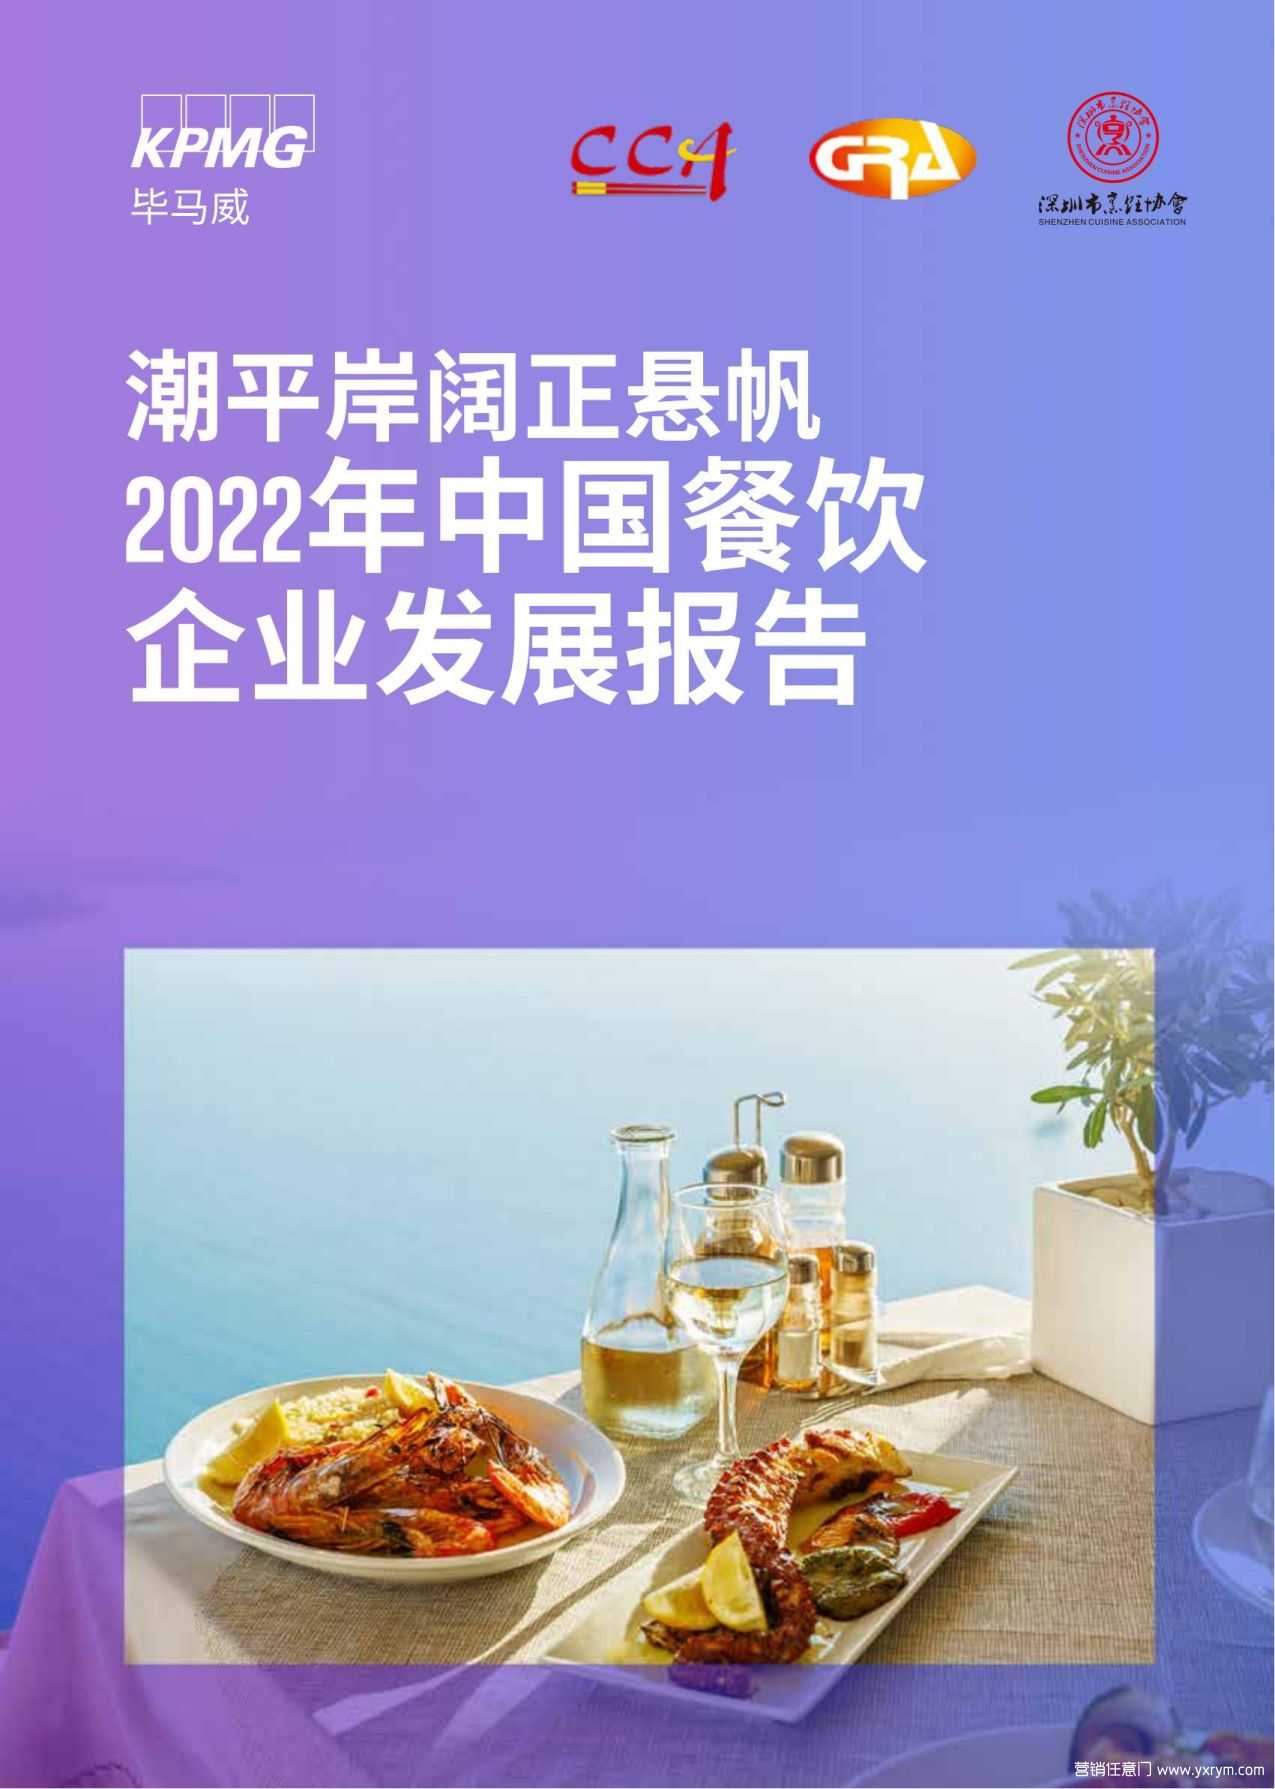 【营销任意门】2022年中国餐饮企业发展报告-毕马威_00